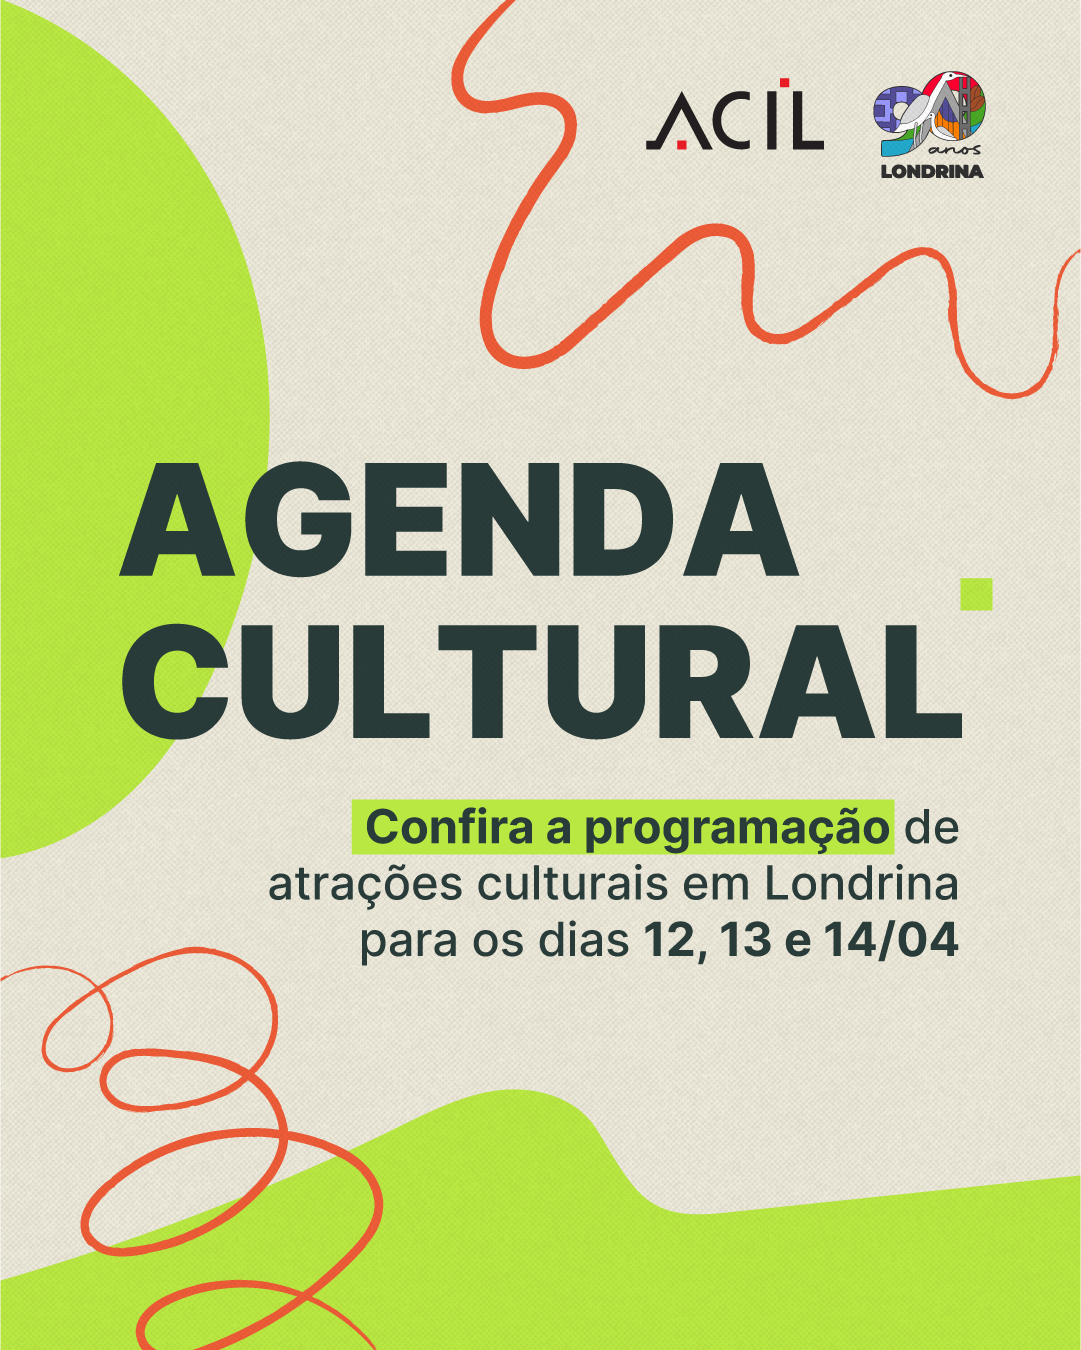 Agenda cultural: confira a programação de atrações para o fim de semana em Londrina